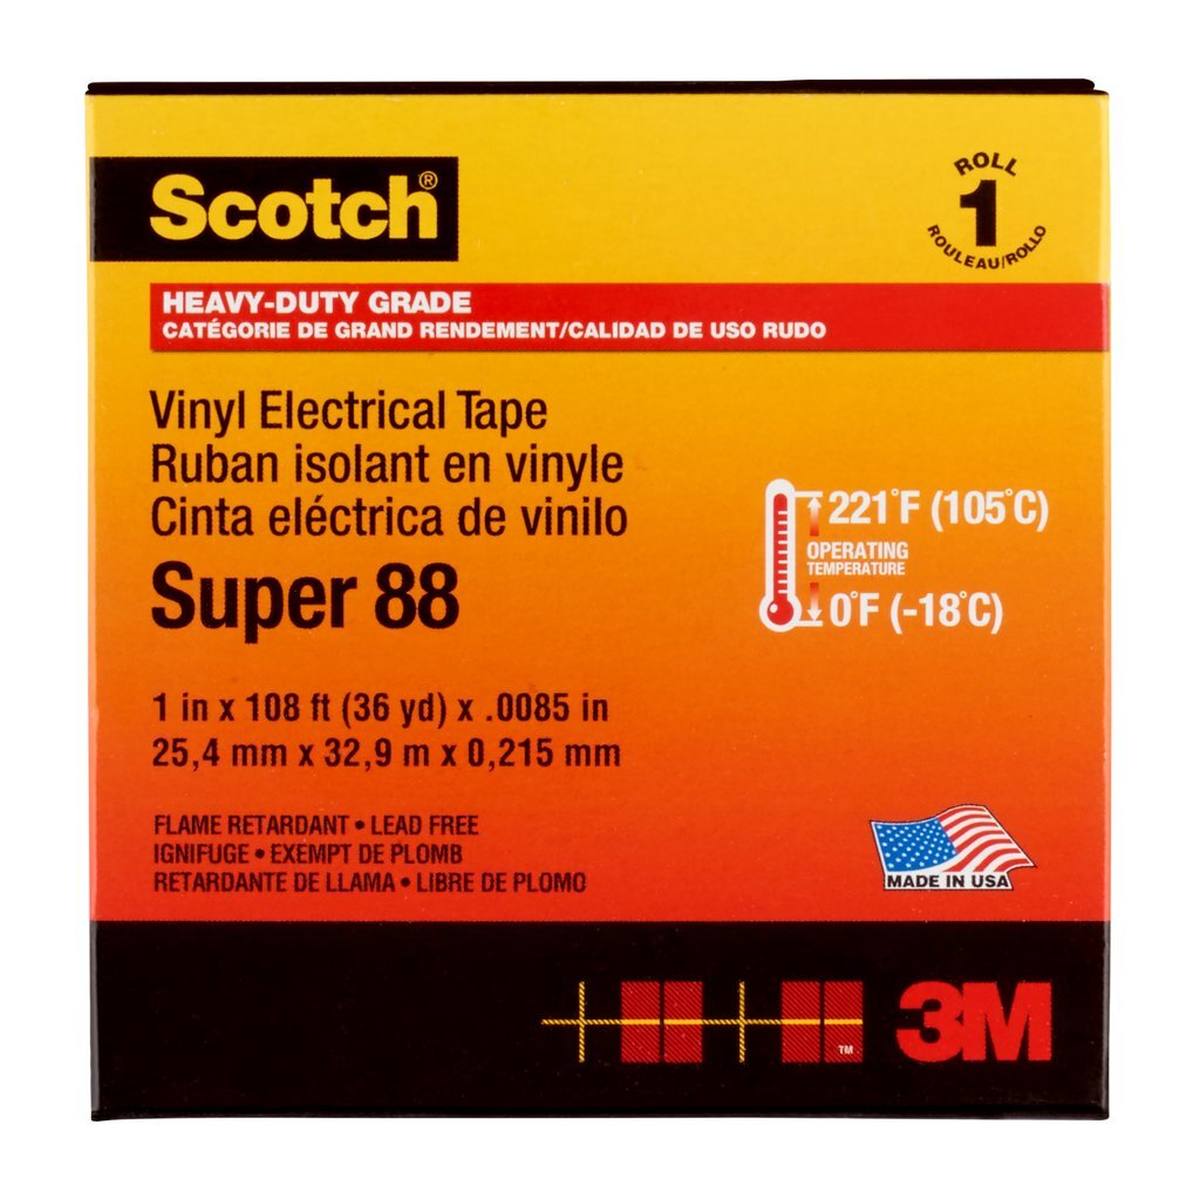 3M Scotch Super 88 vinyl electrical insulating tape, black, 25 mm x 33 m, 0.22 mm